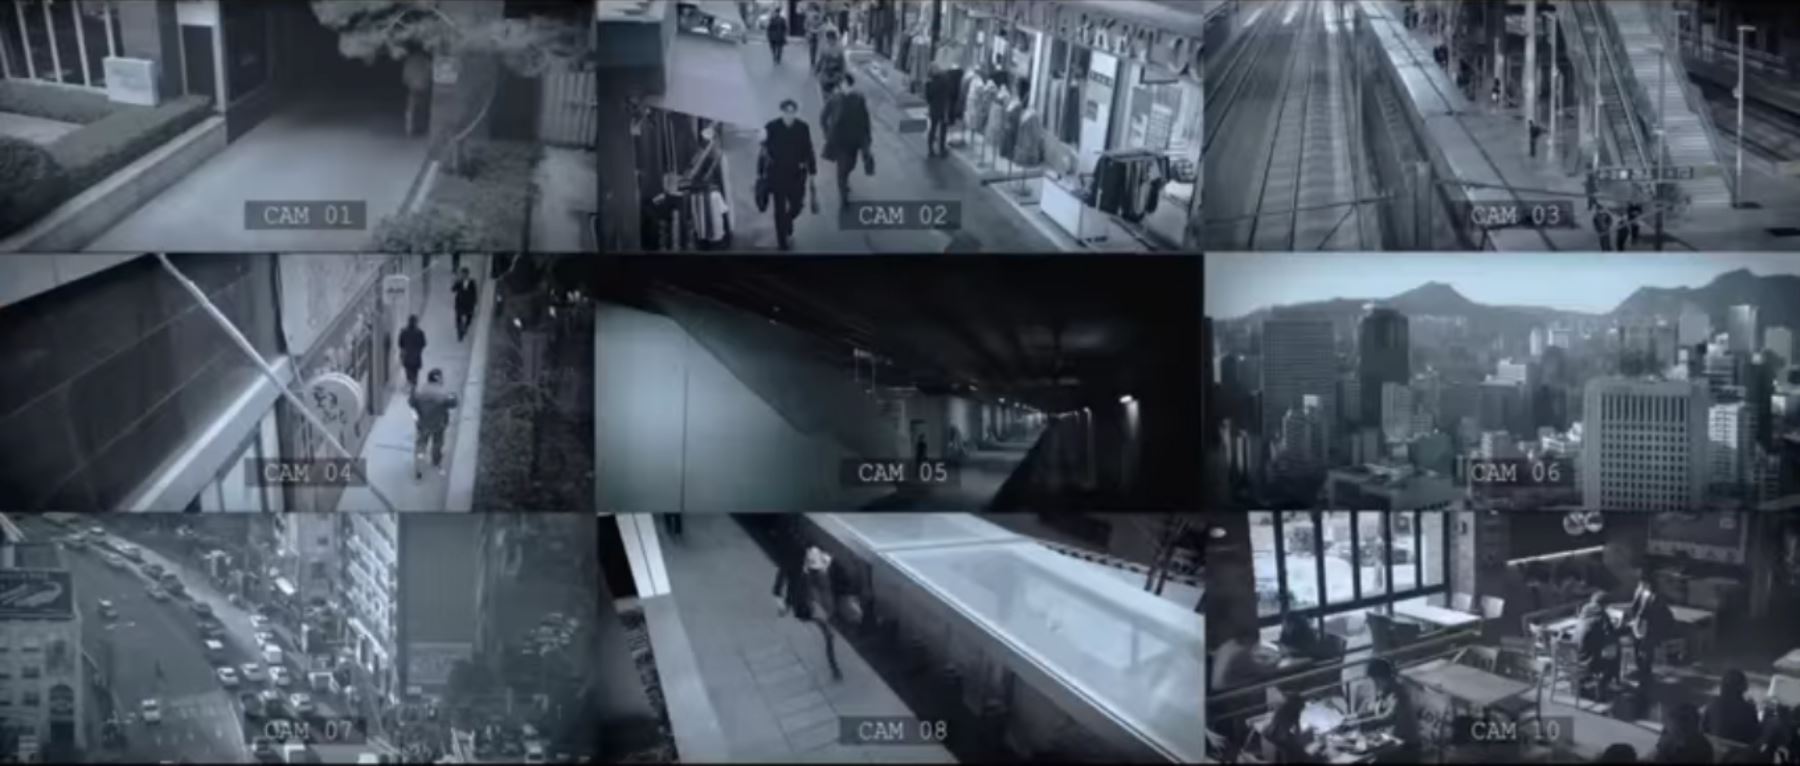 Escena de la película coreana Vigilancia extrema